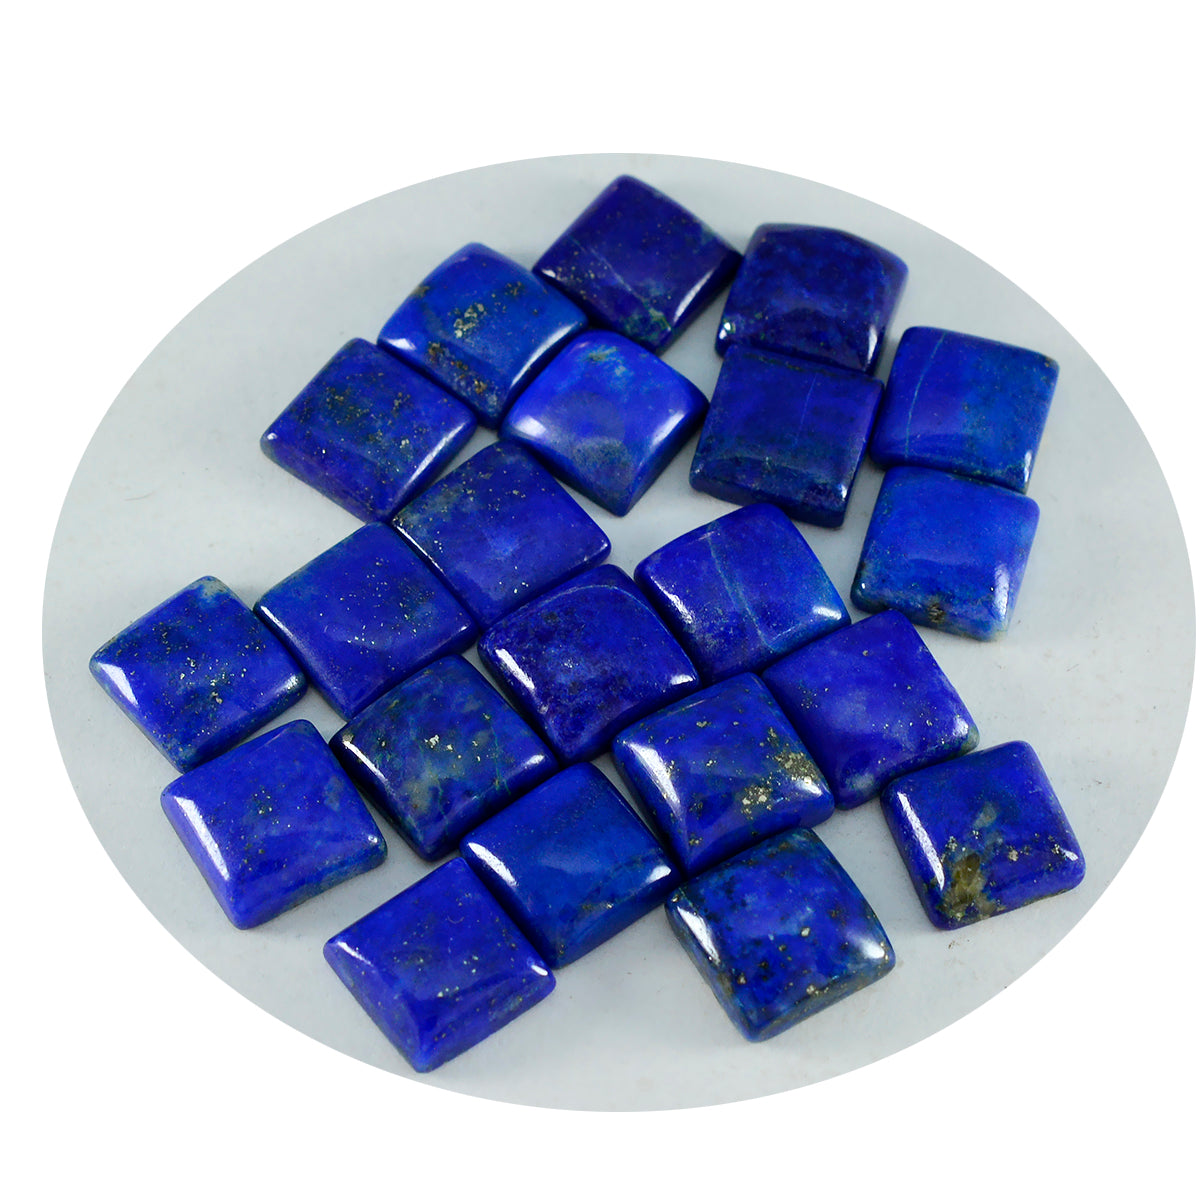 Riyogems 1PC blauwe lapis lazuli cabochon 9x9 mm vierkante vorm schattige kwaliteit losse edelsteen